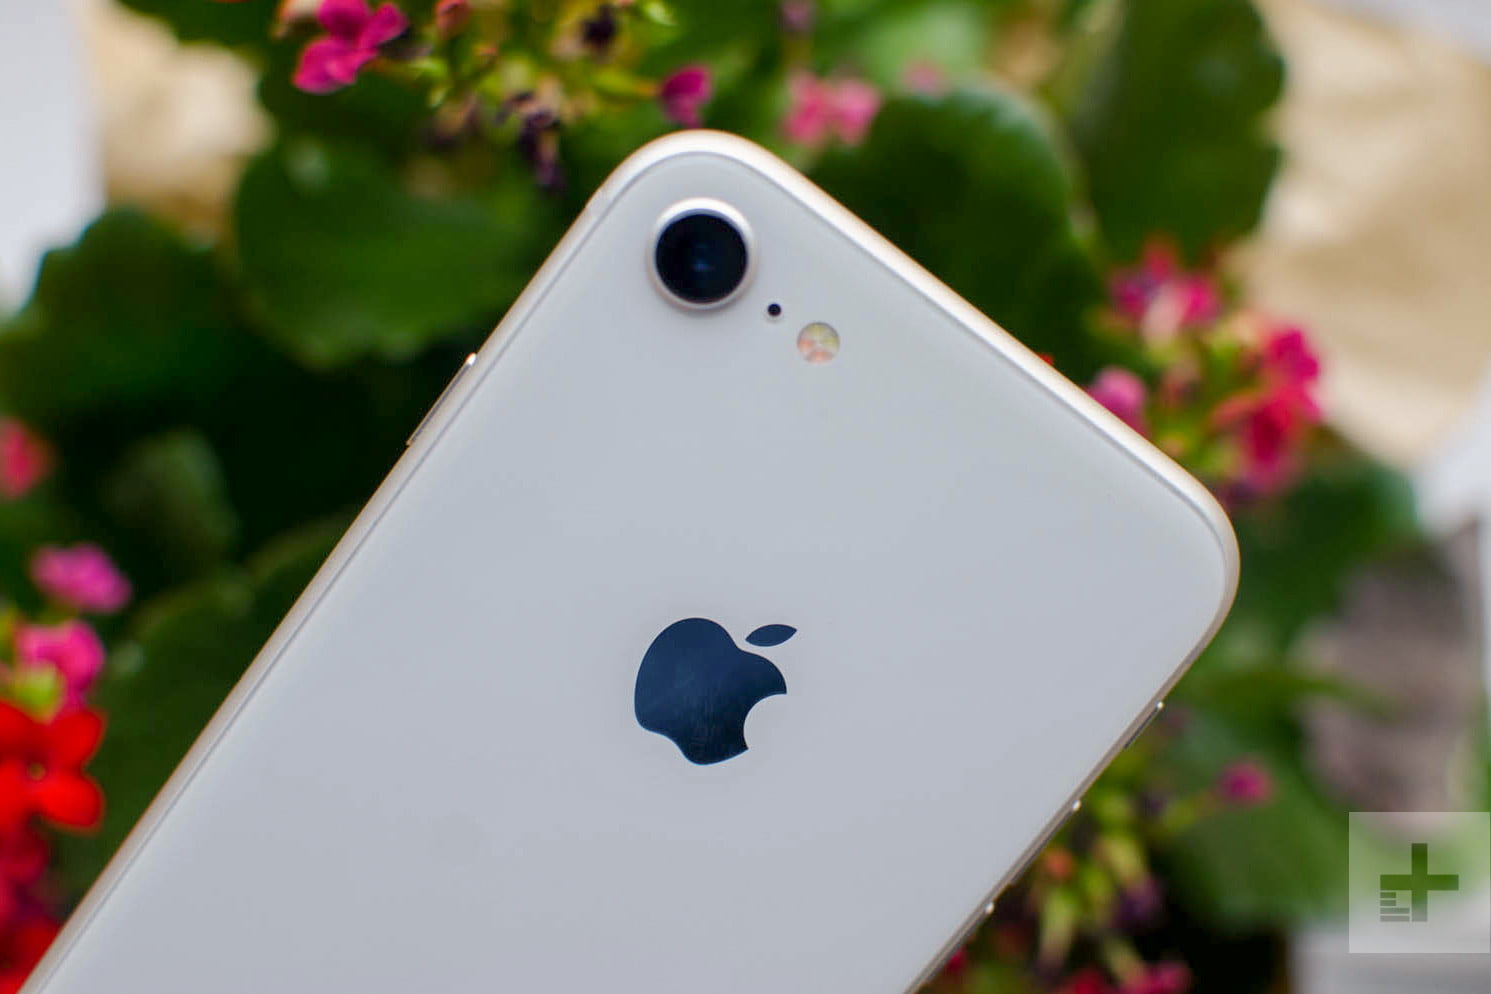 Enorme Dónde sarcoma Apple descontinúa la venta del iPhone 8 y 8 Plus | Digital Trends Español